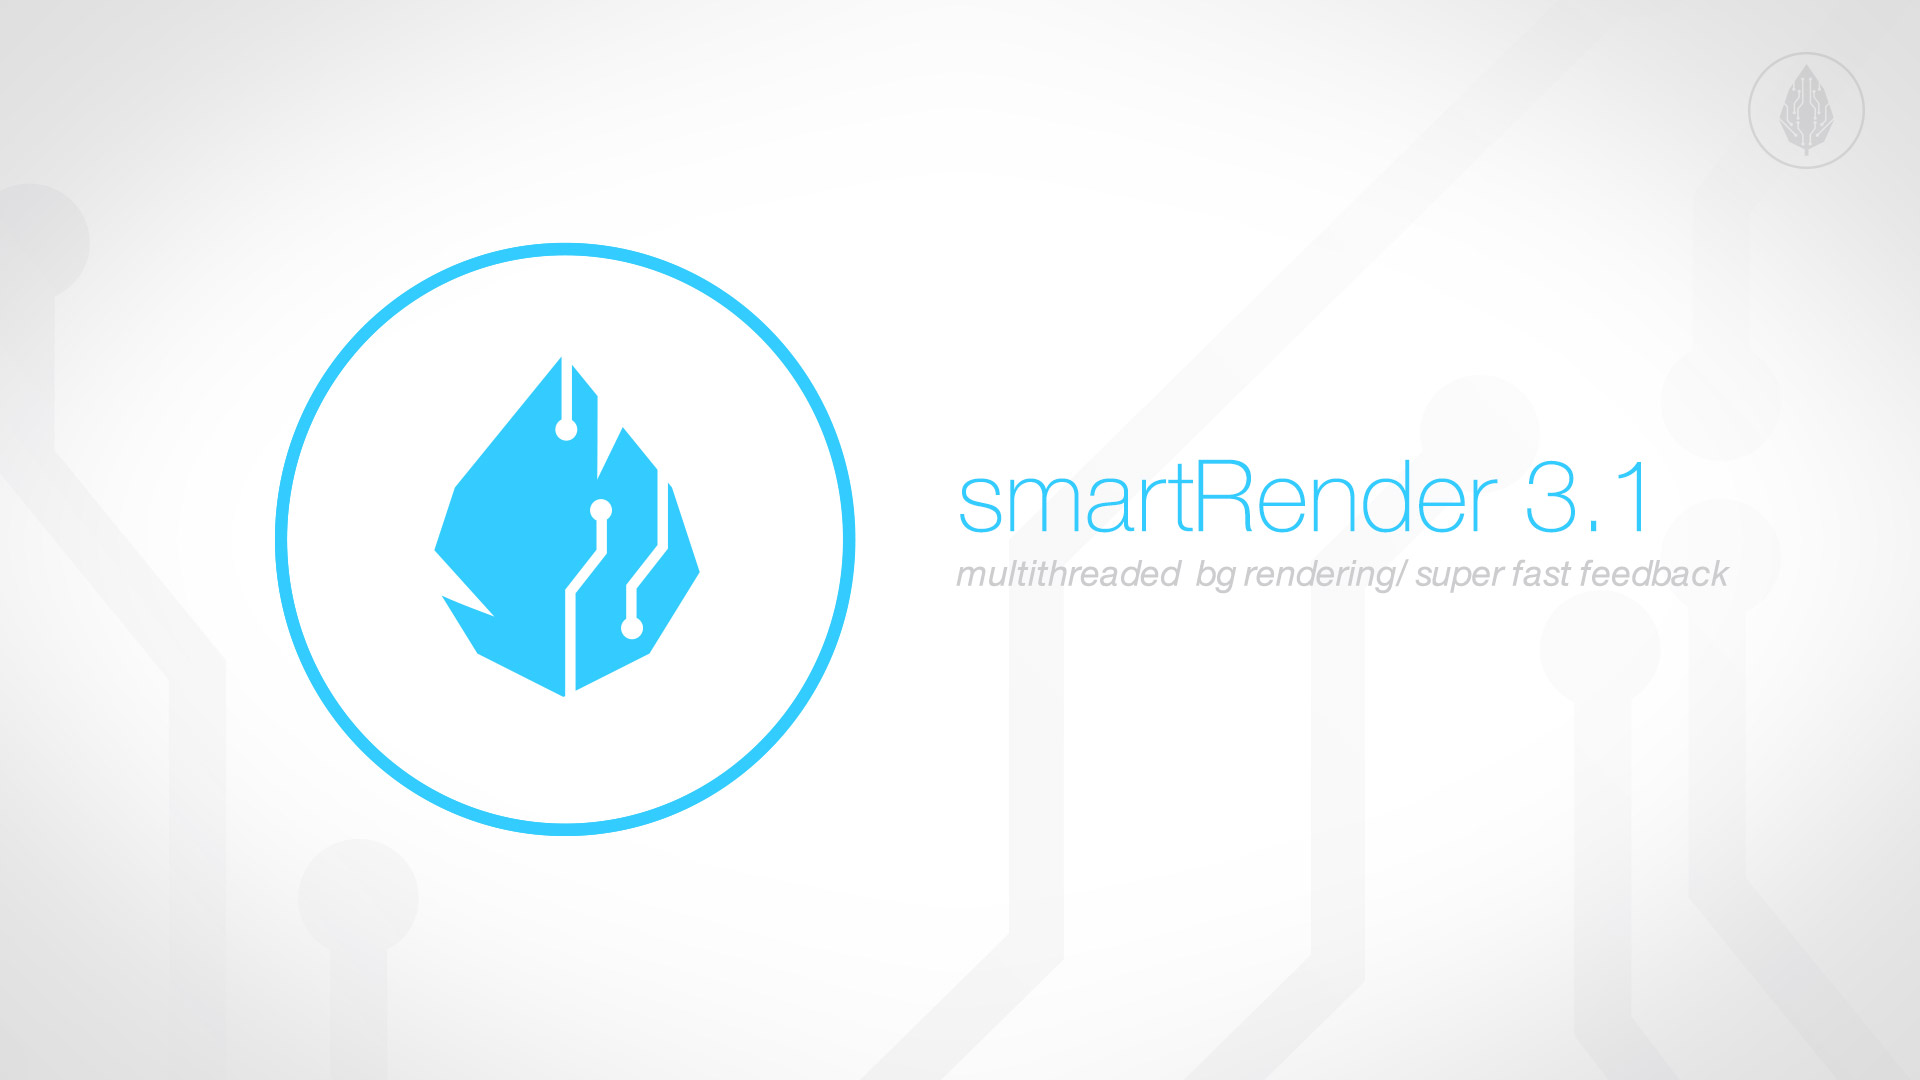 smartRender 3.1